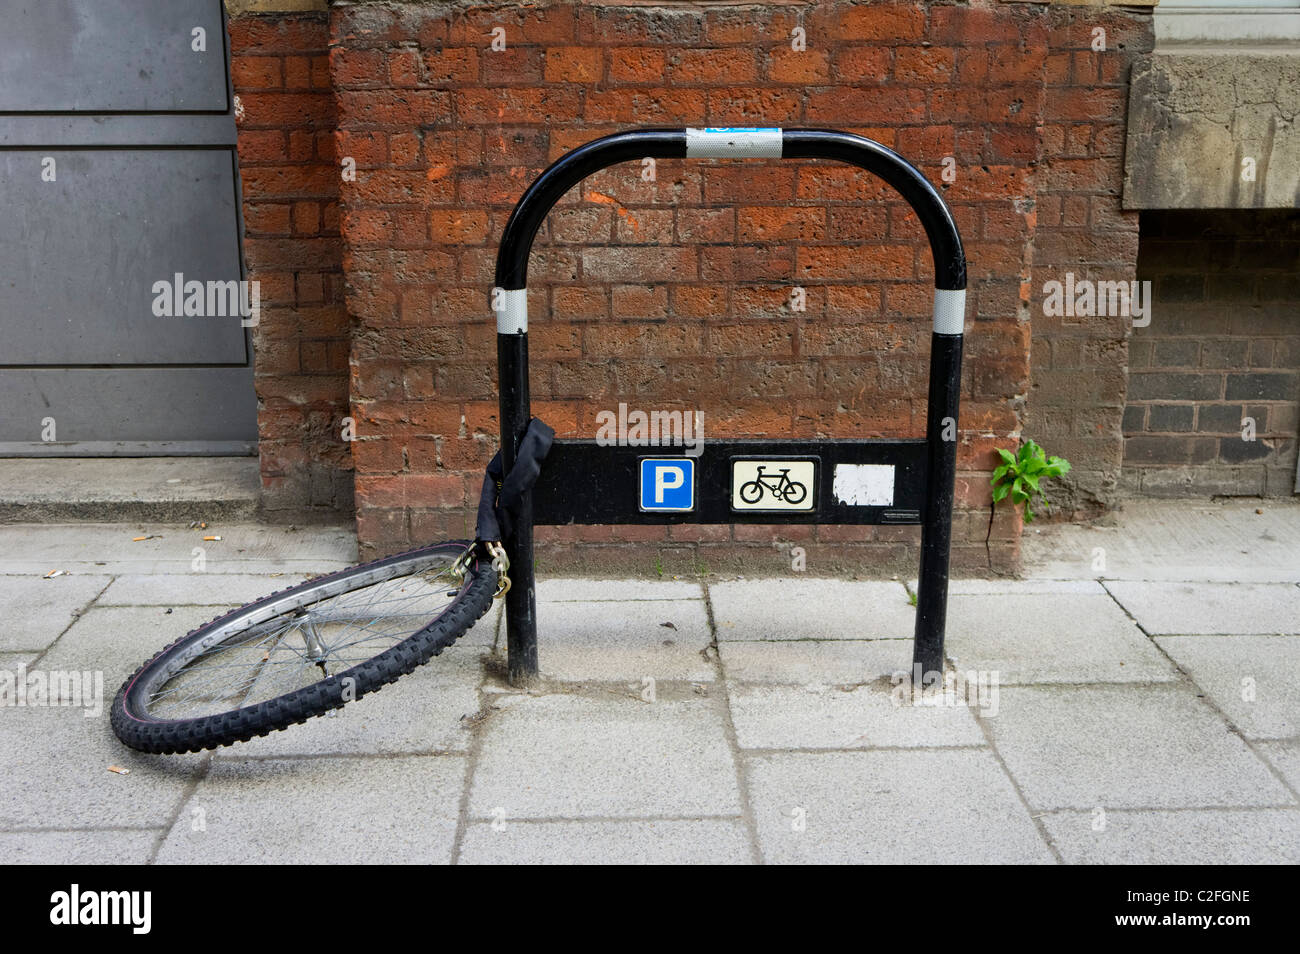 Roue de vélo enchaîné à un poste de stationnement pour vélos Banque D'Images